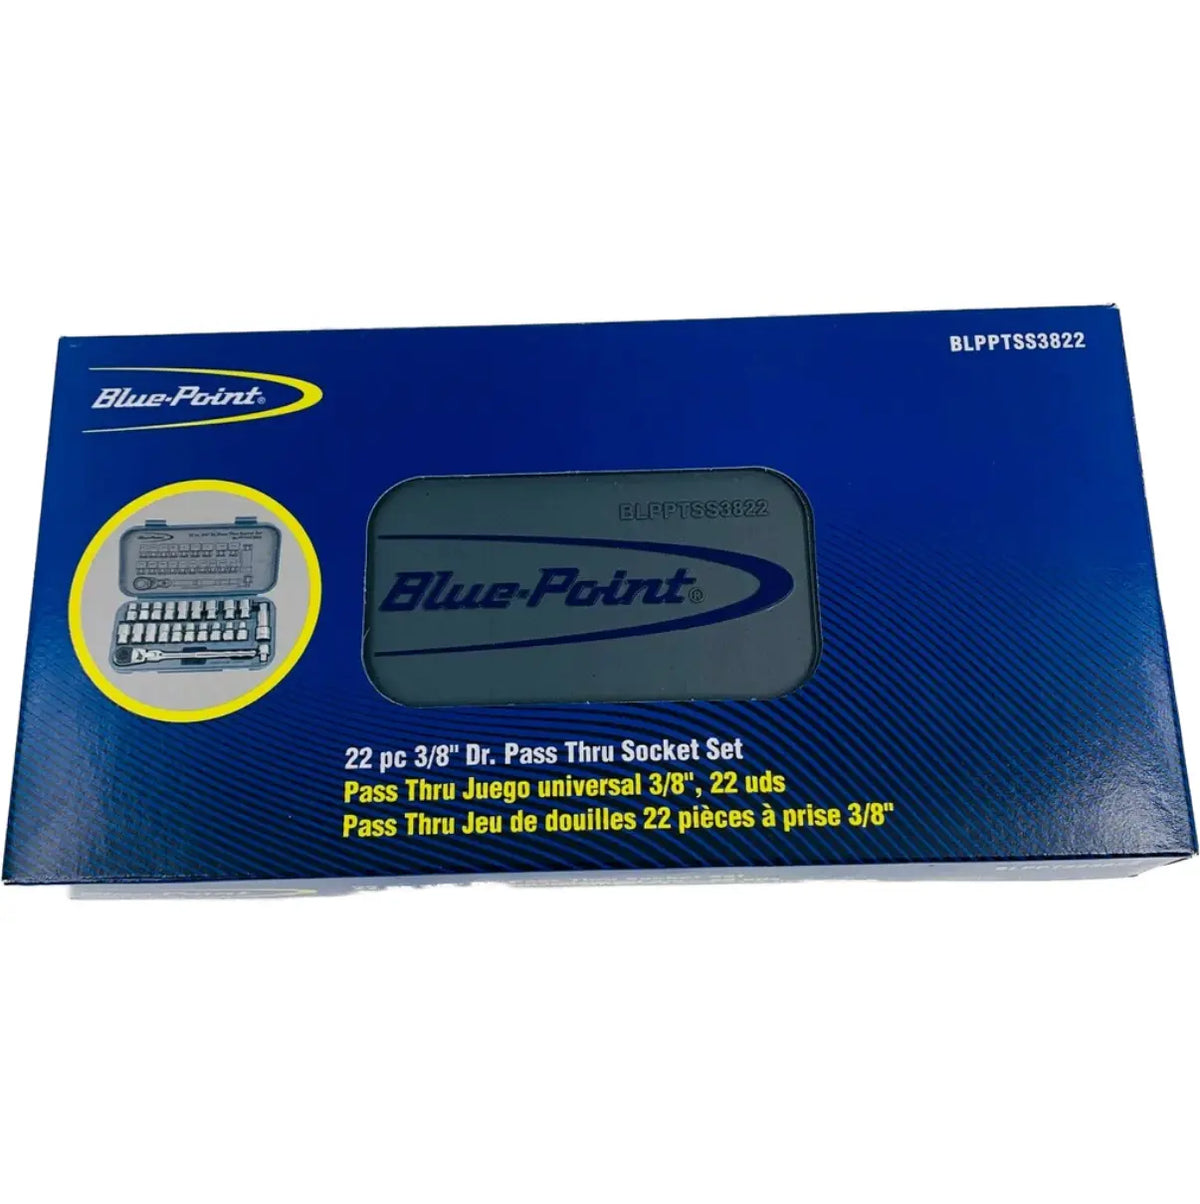 Blue Point 22 PC 3/8 Drive Pass Thru Socket Set Blpptss3822 - FairTools Blue Point 22 PC 3/8 Drive Pass Thru Socket Set Blpptss3822